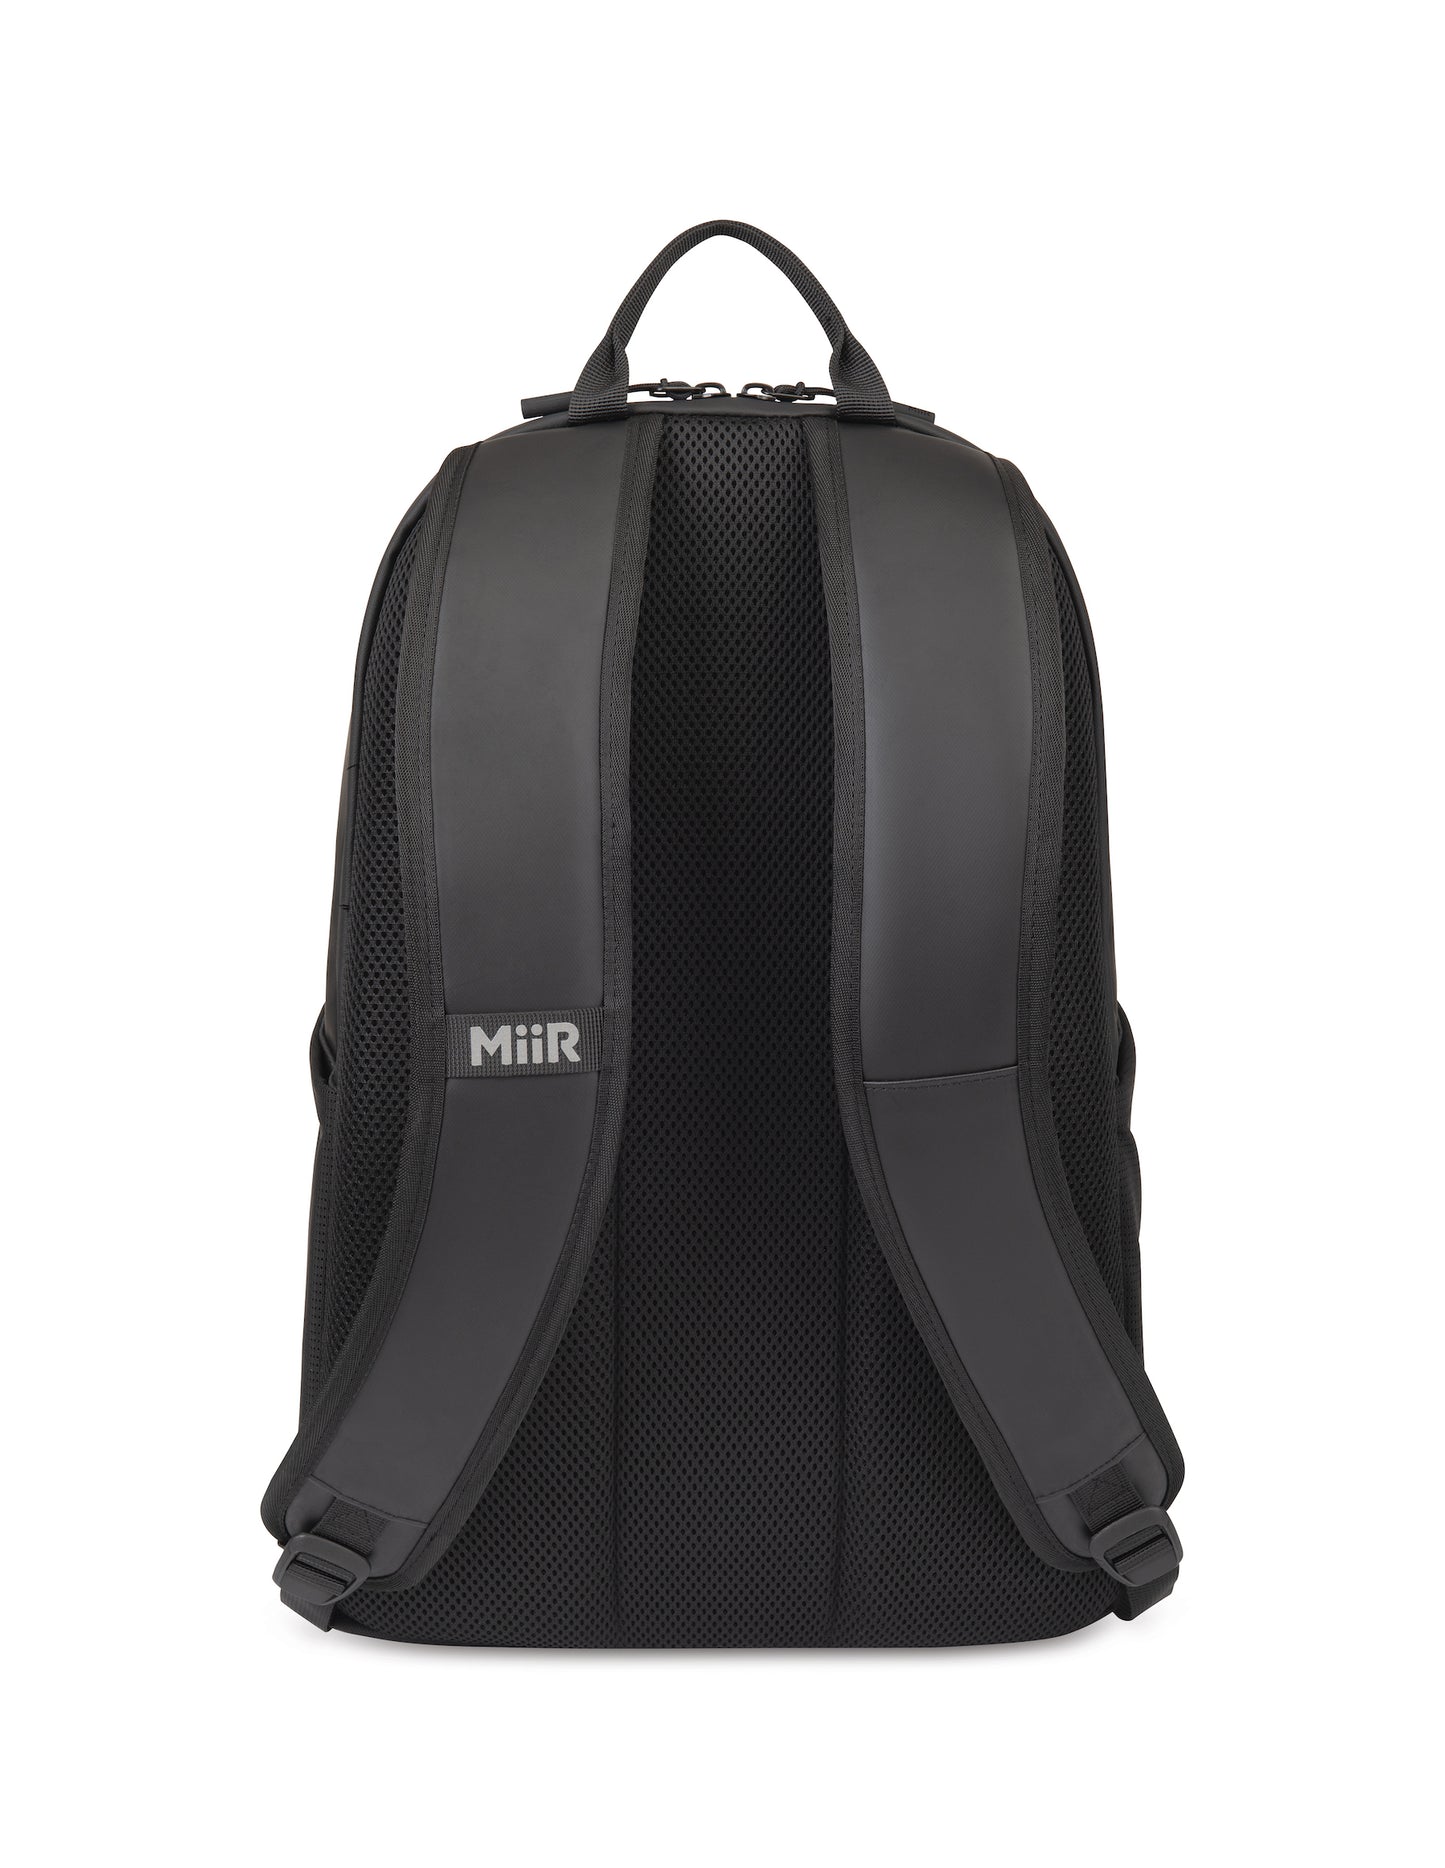 MiiR Olympus 2.0 15L Laptop Backpack